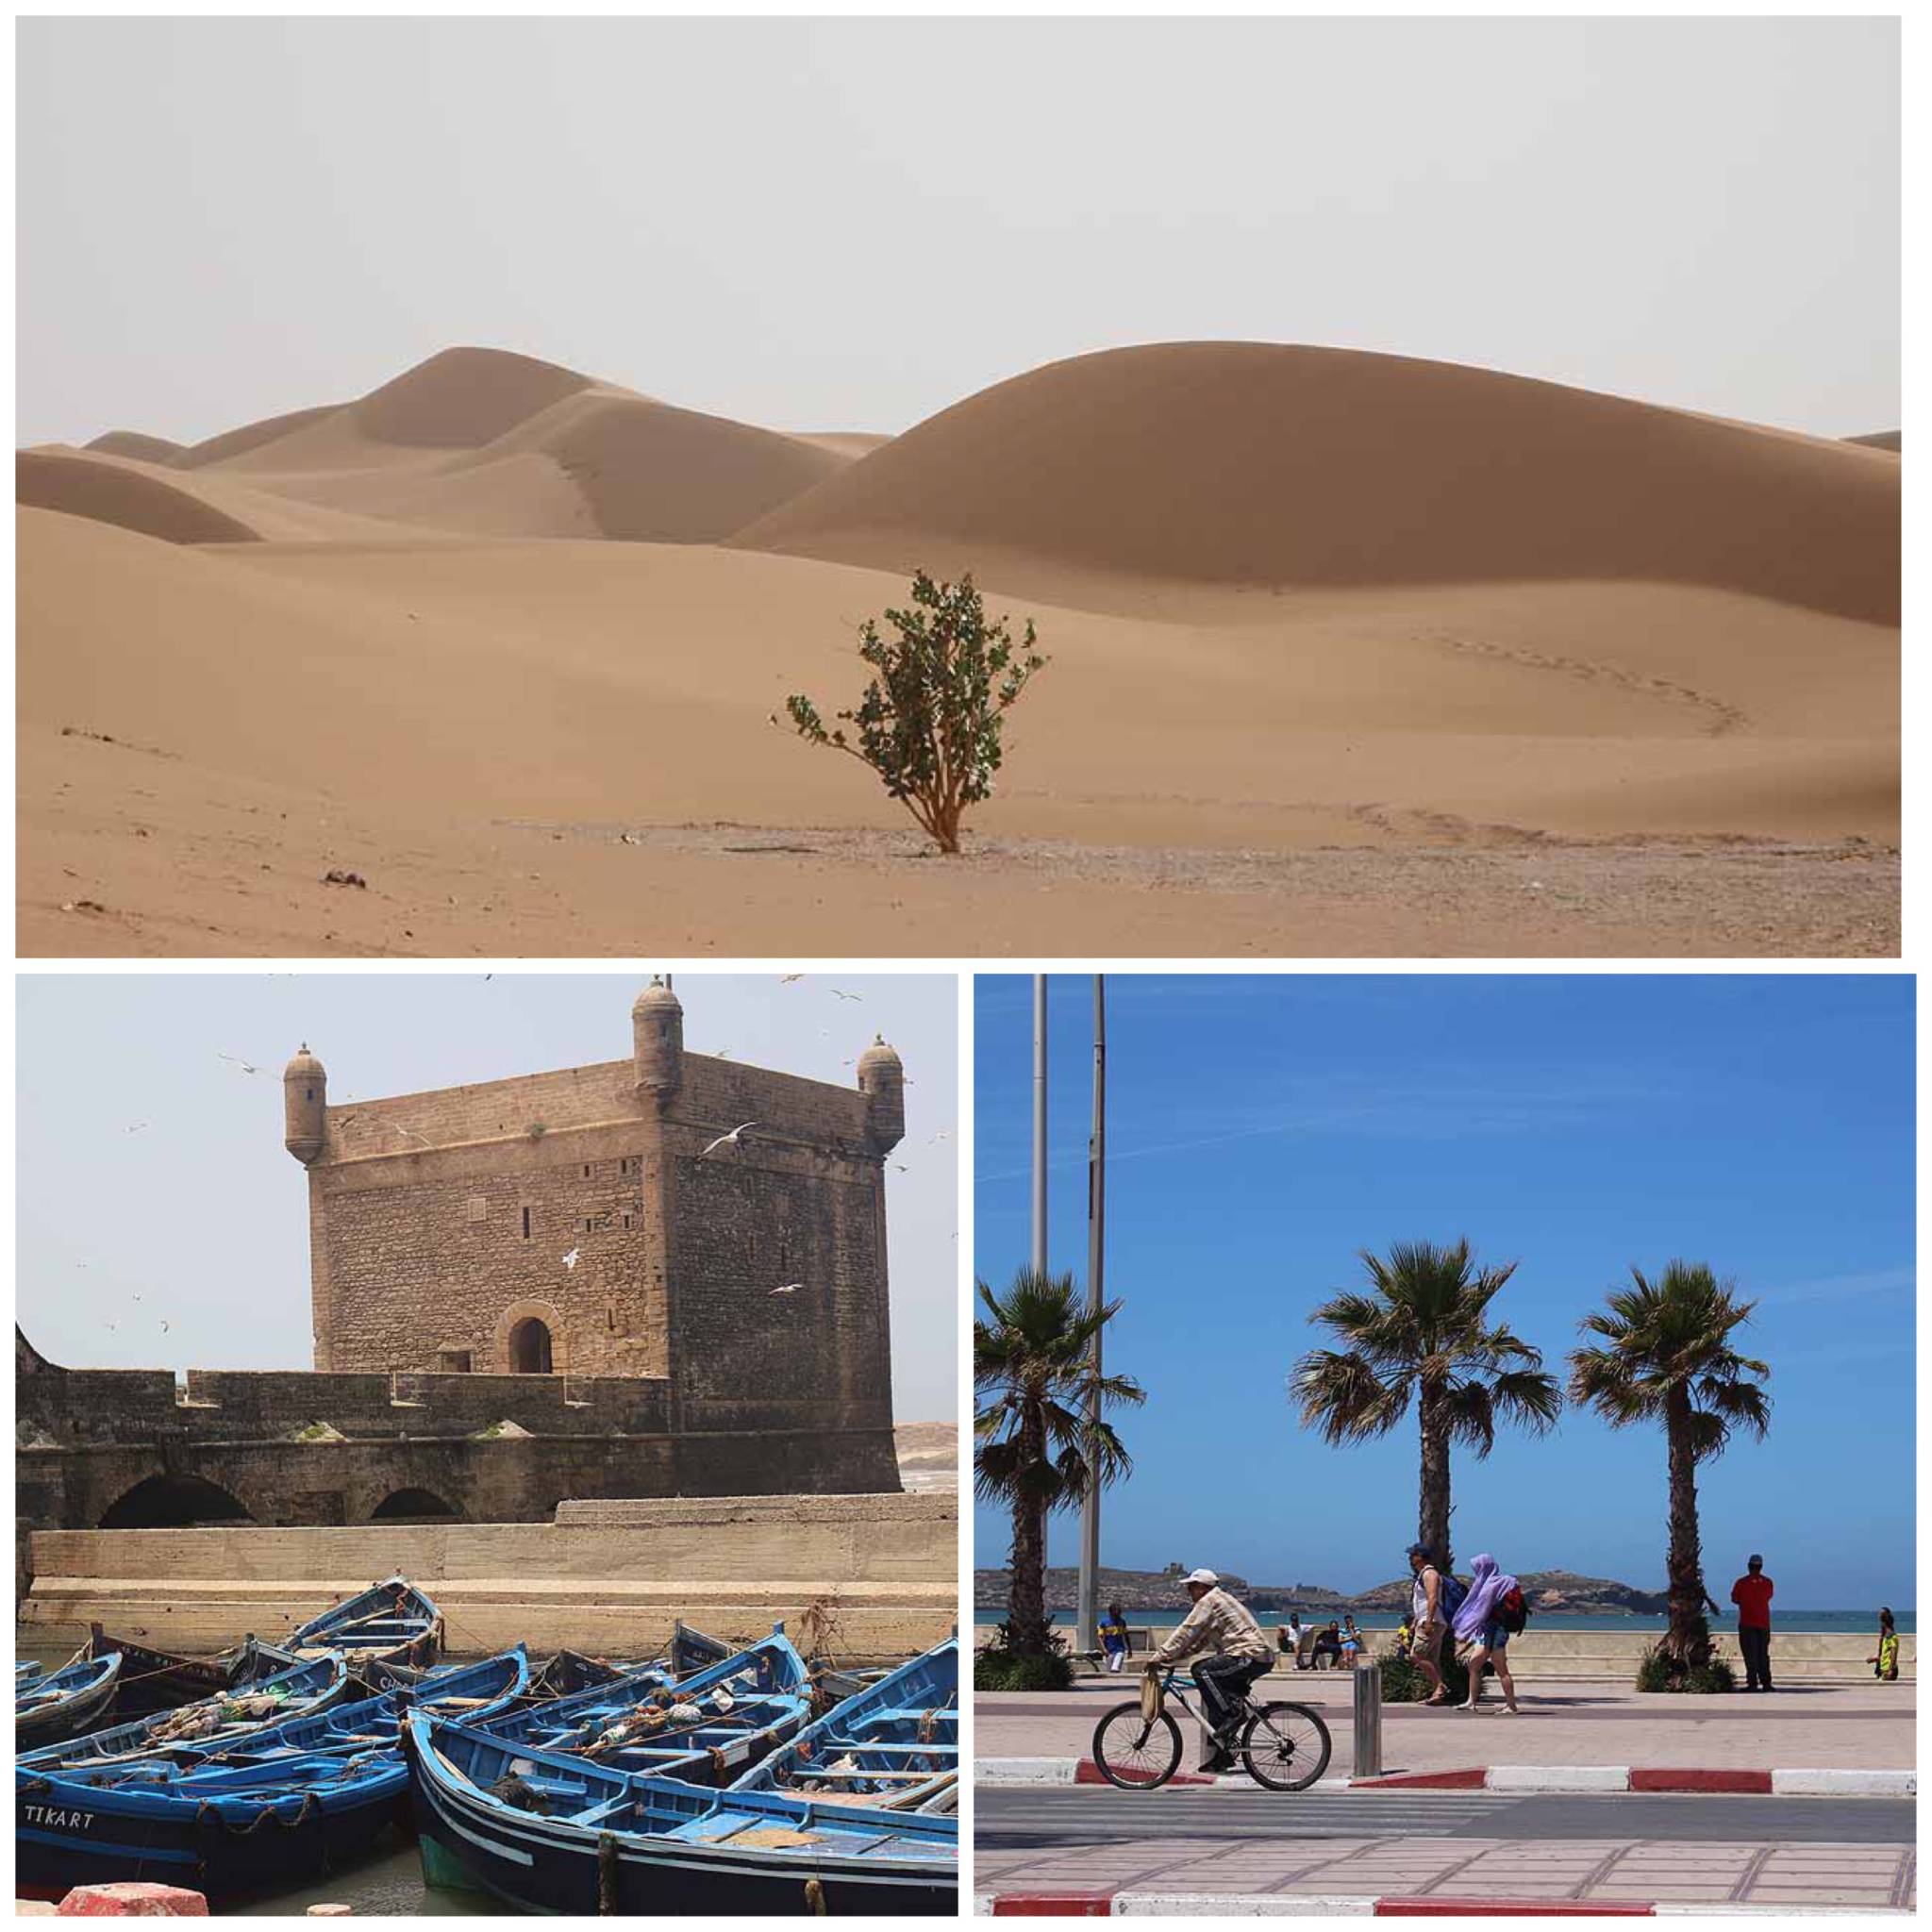 https://www.desert-candles.com/project/marrakech-draa-valley-dunes-of-erg-lihoudi/